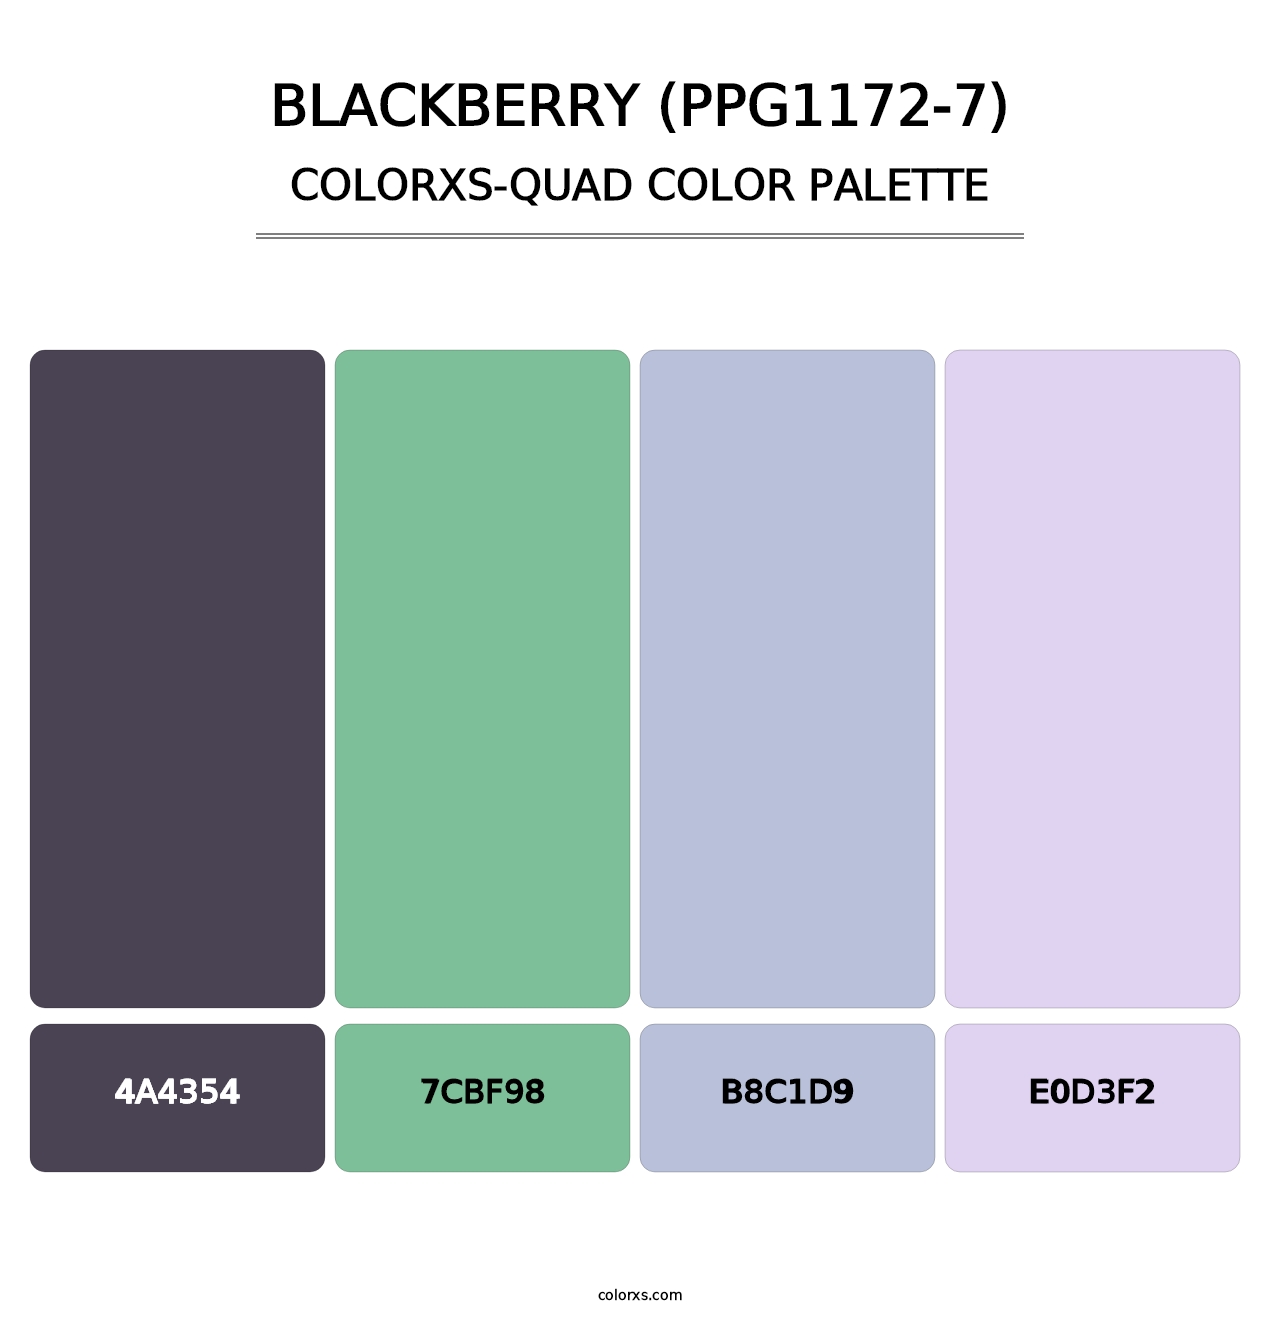 Blackberry (PPG1172-7) - Colorxs Quad Palette